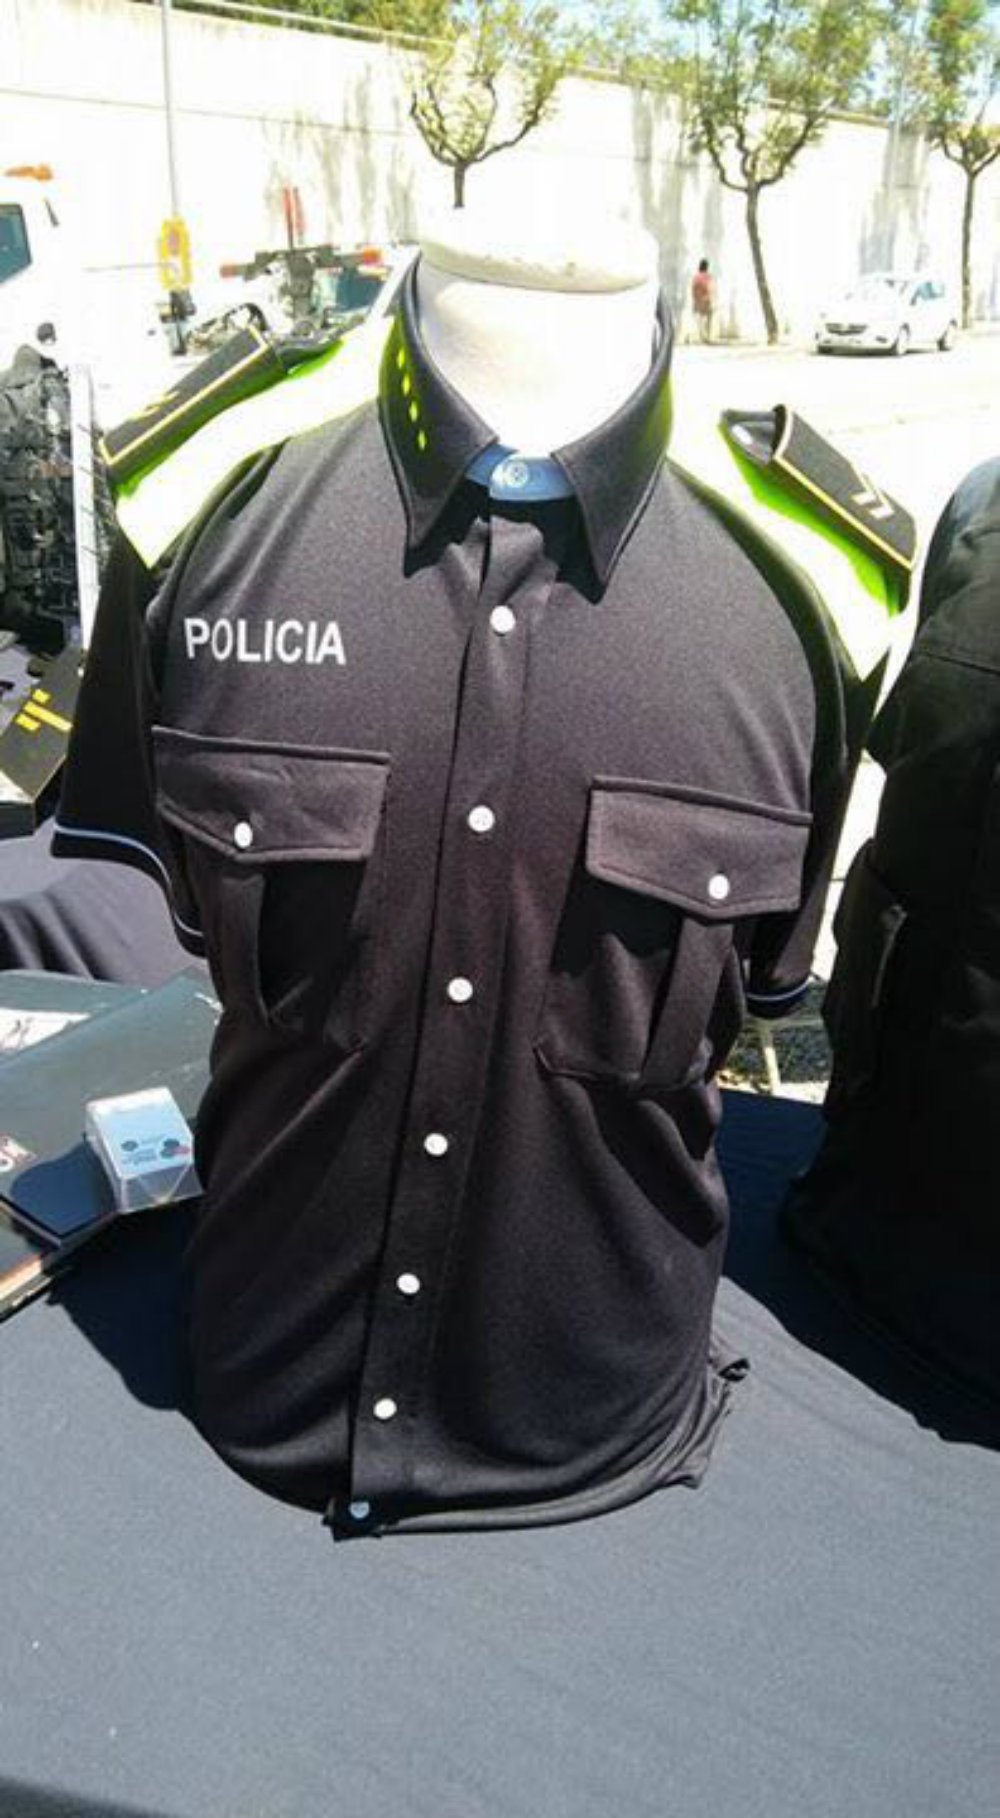 Els nous uniformes de les policies locals són blau fosc amb franges fluorescents